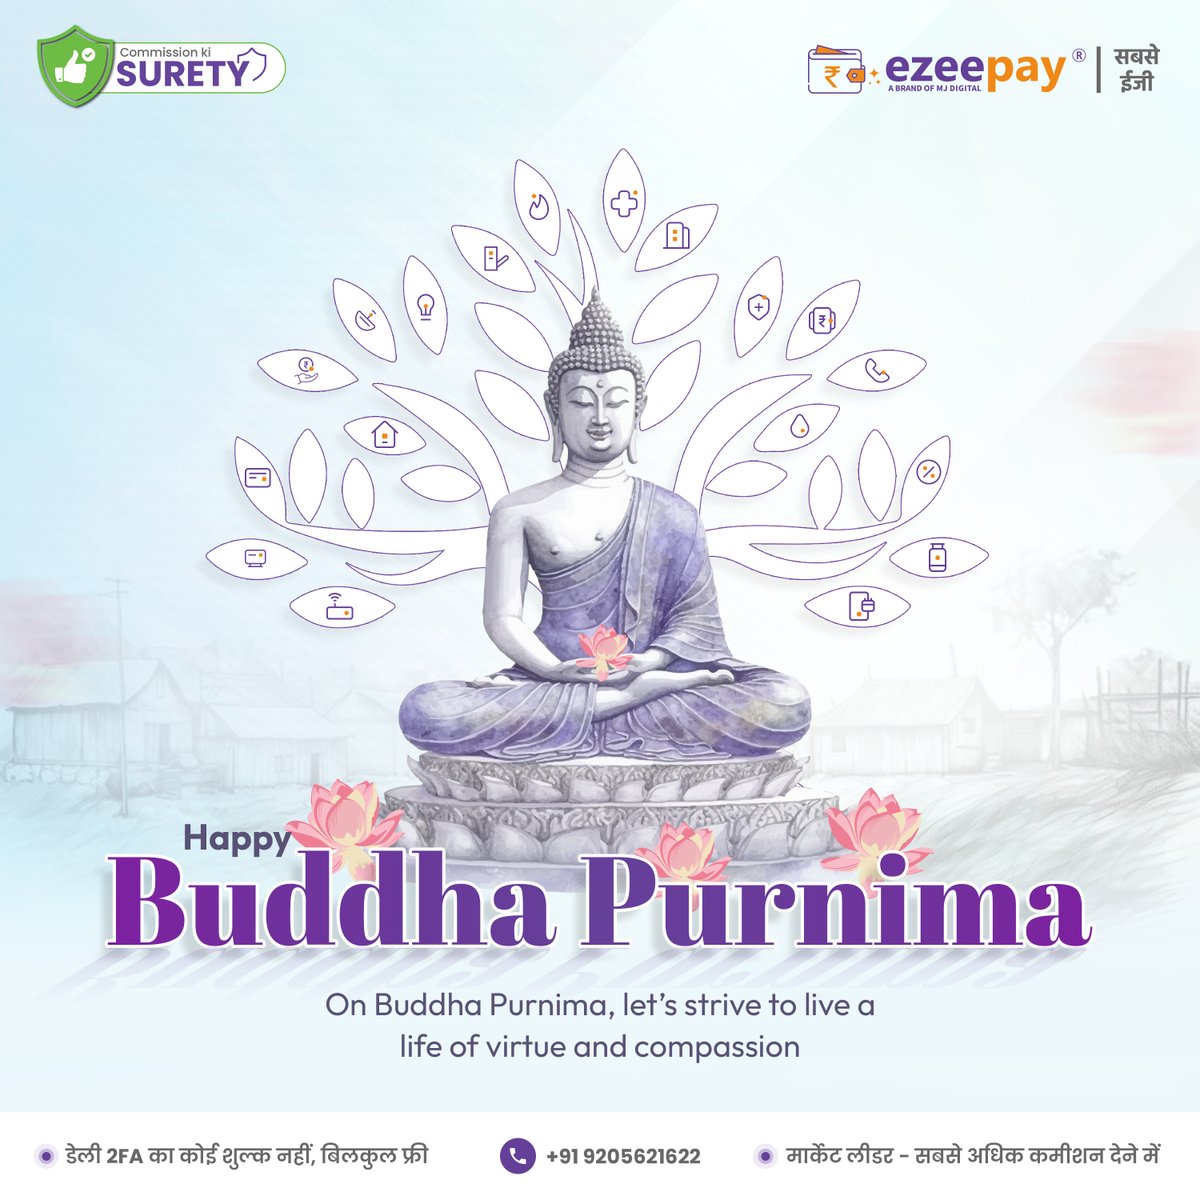 आप सभी को ईजी पे परिवार की तरफ से बुद्ध पूर्णिमा की हार्दिक शुभकामनाएं!

इस पवित्र अवसर पर, आप सभी के जीवन में सुख, शांति और समृद्धि का वास हो। आइए, मिलकर एक बेहतर और सौहार्दपूर्ण समाज का निर्माण करें।

#BuddhaPurnima #Ezeepay #शांति #करुणा #सच्चाई